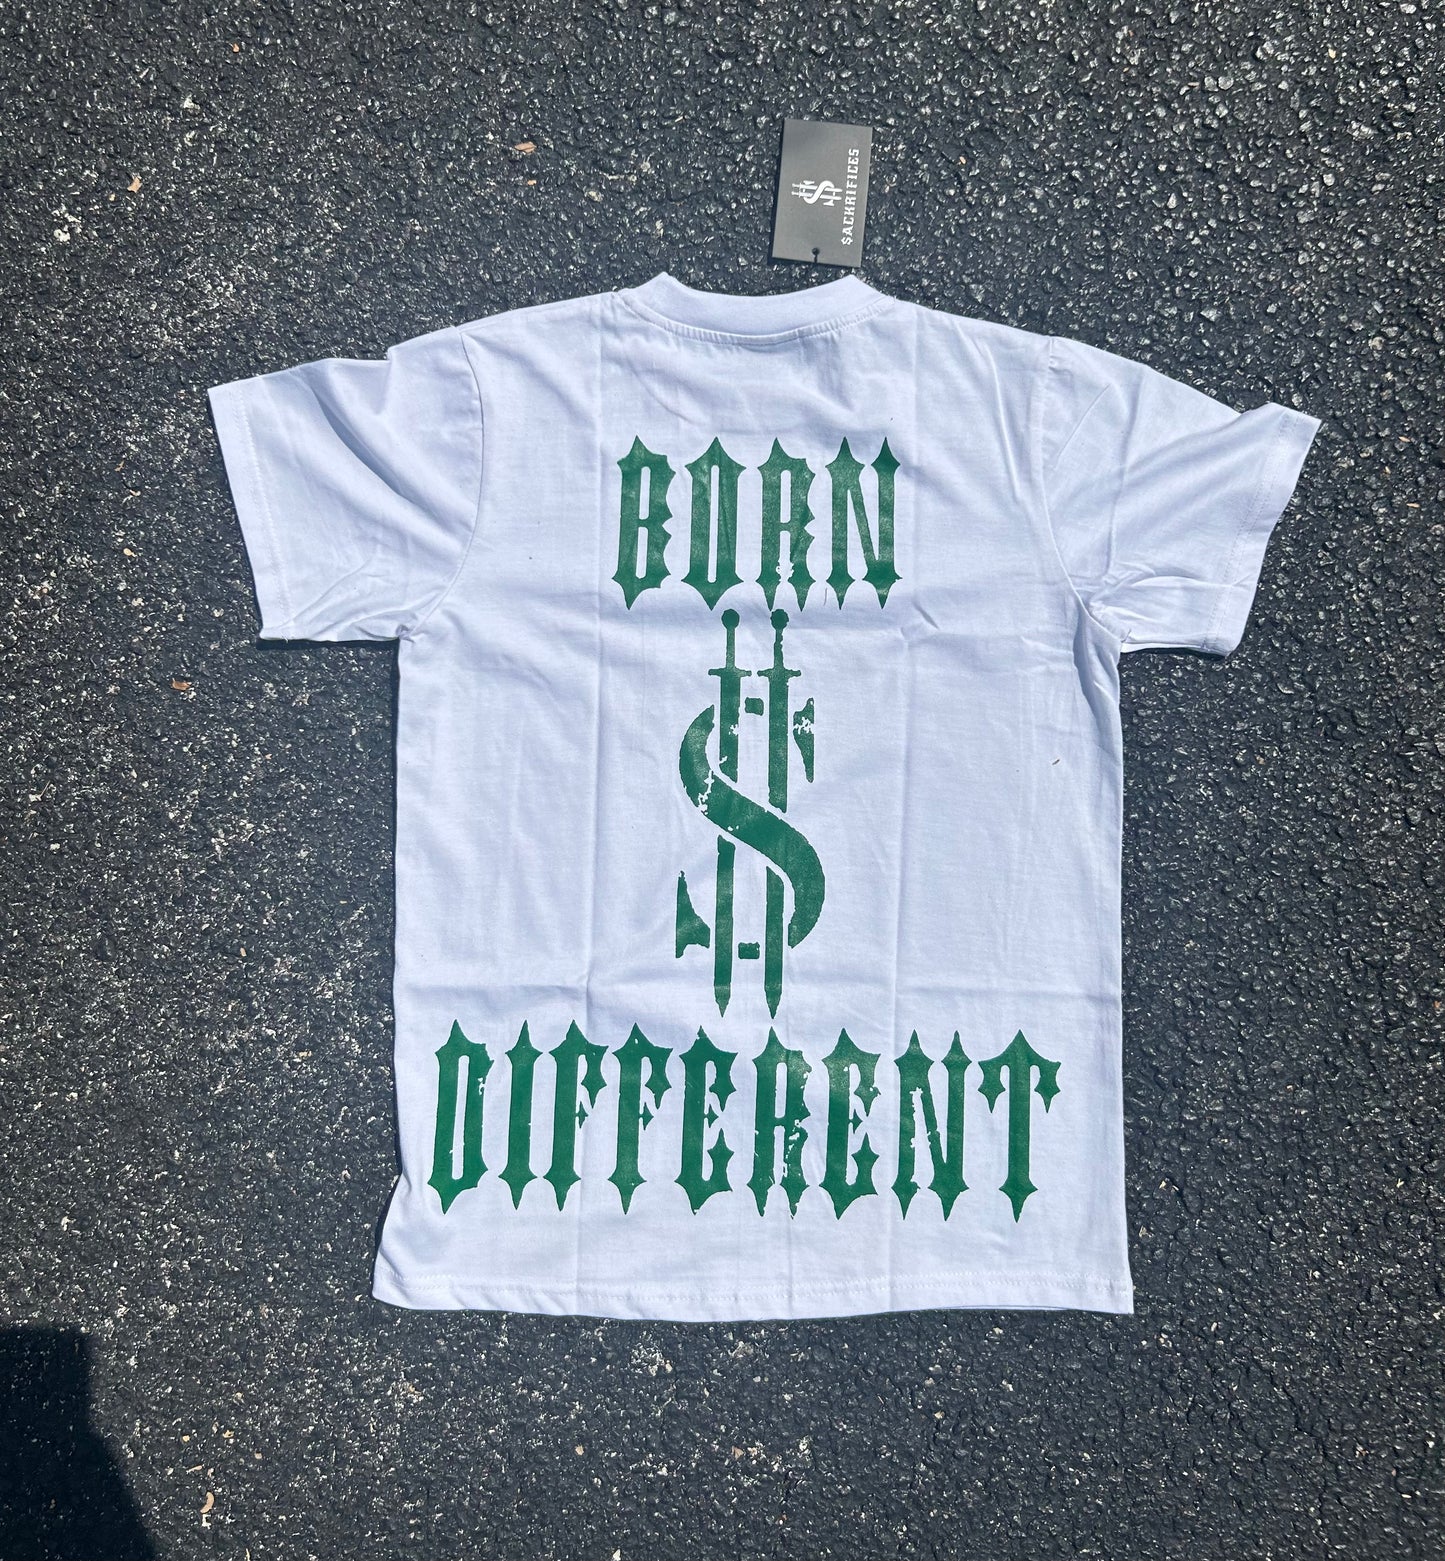 Sack Dollar V2 - T-shirt